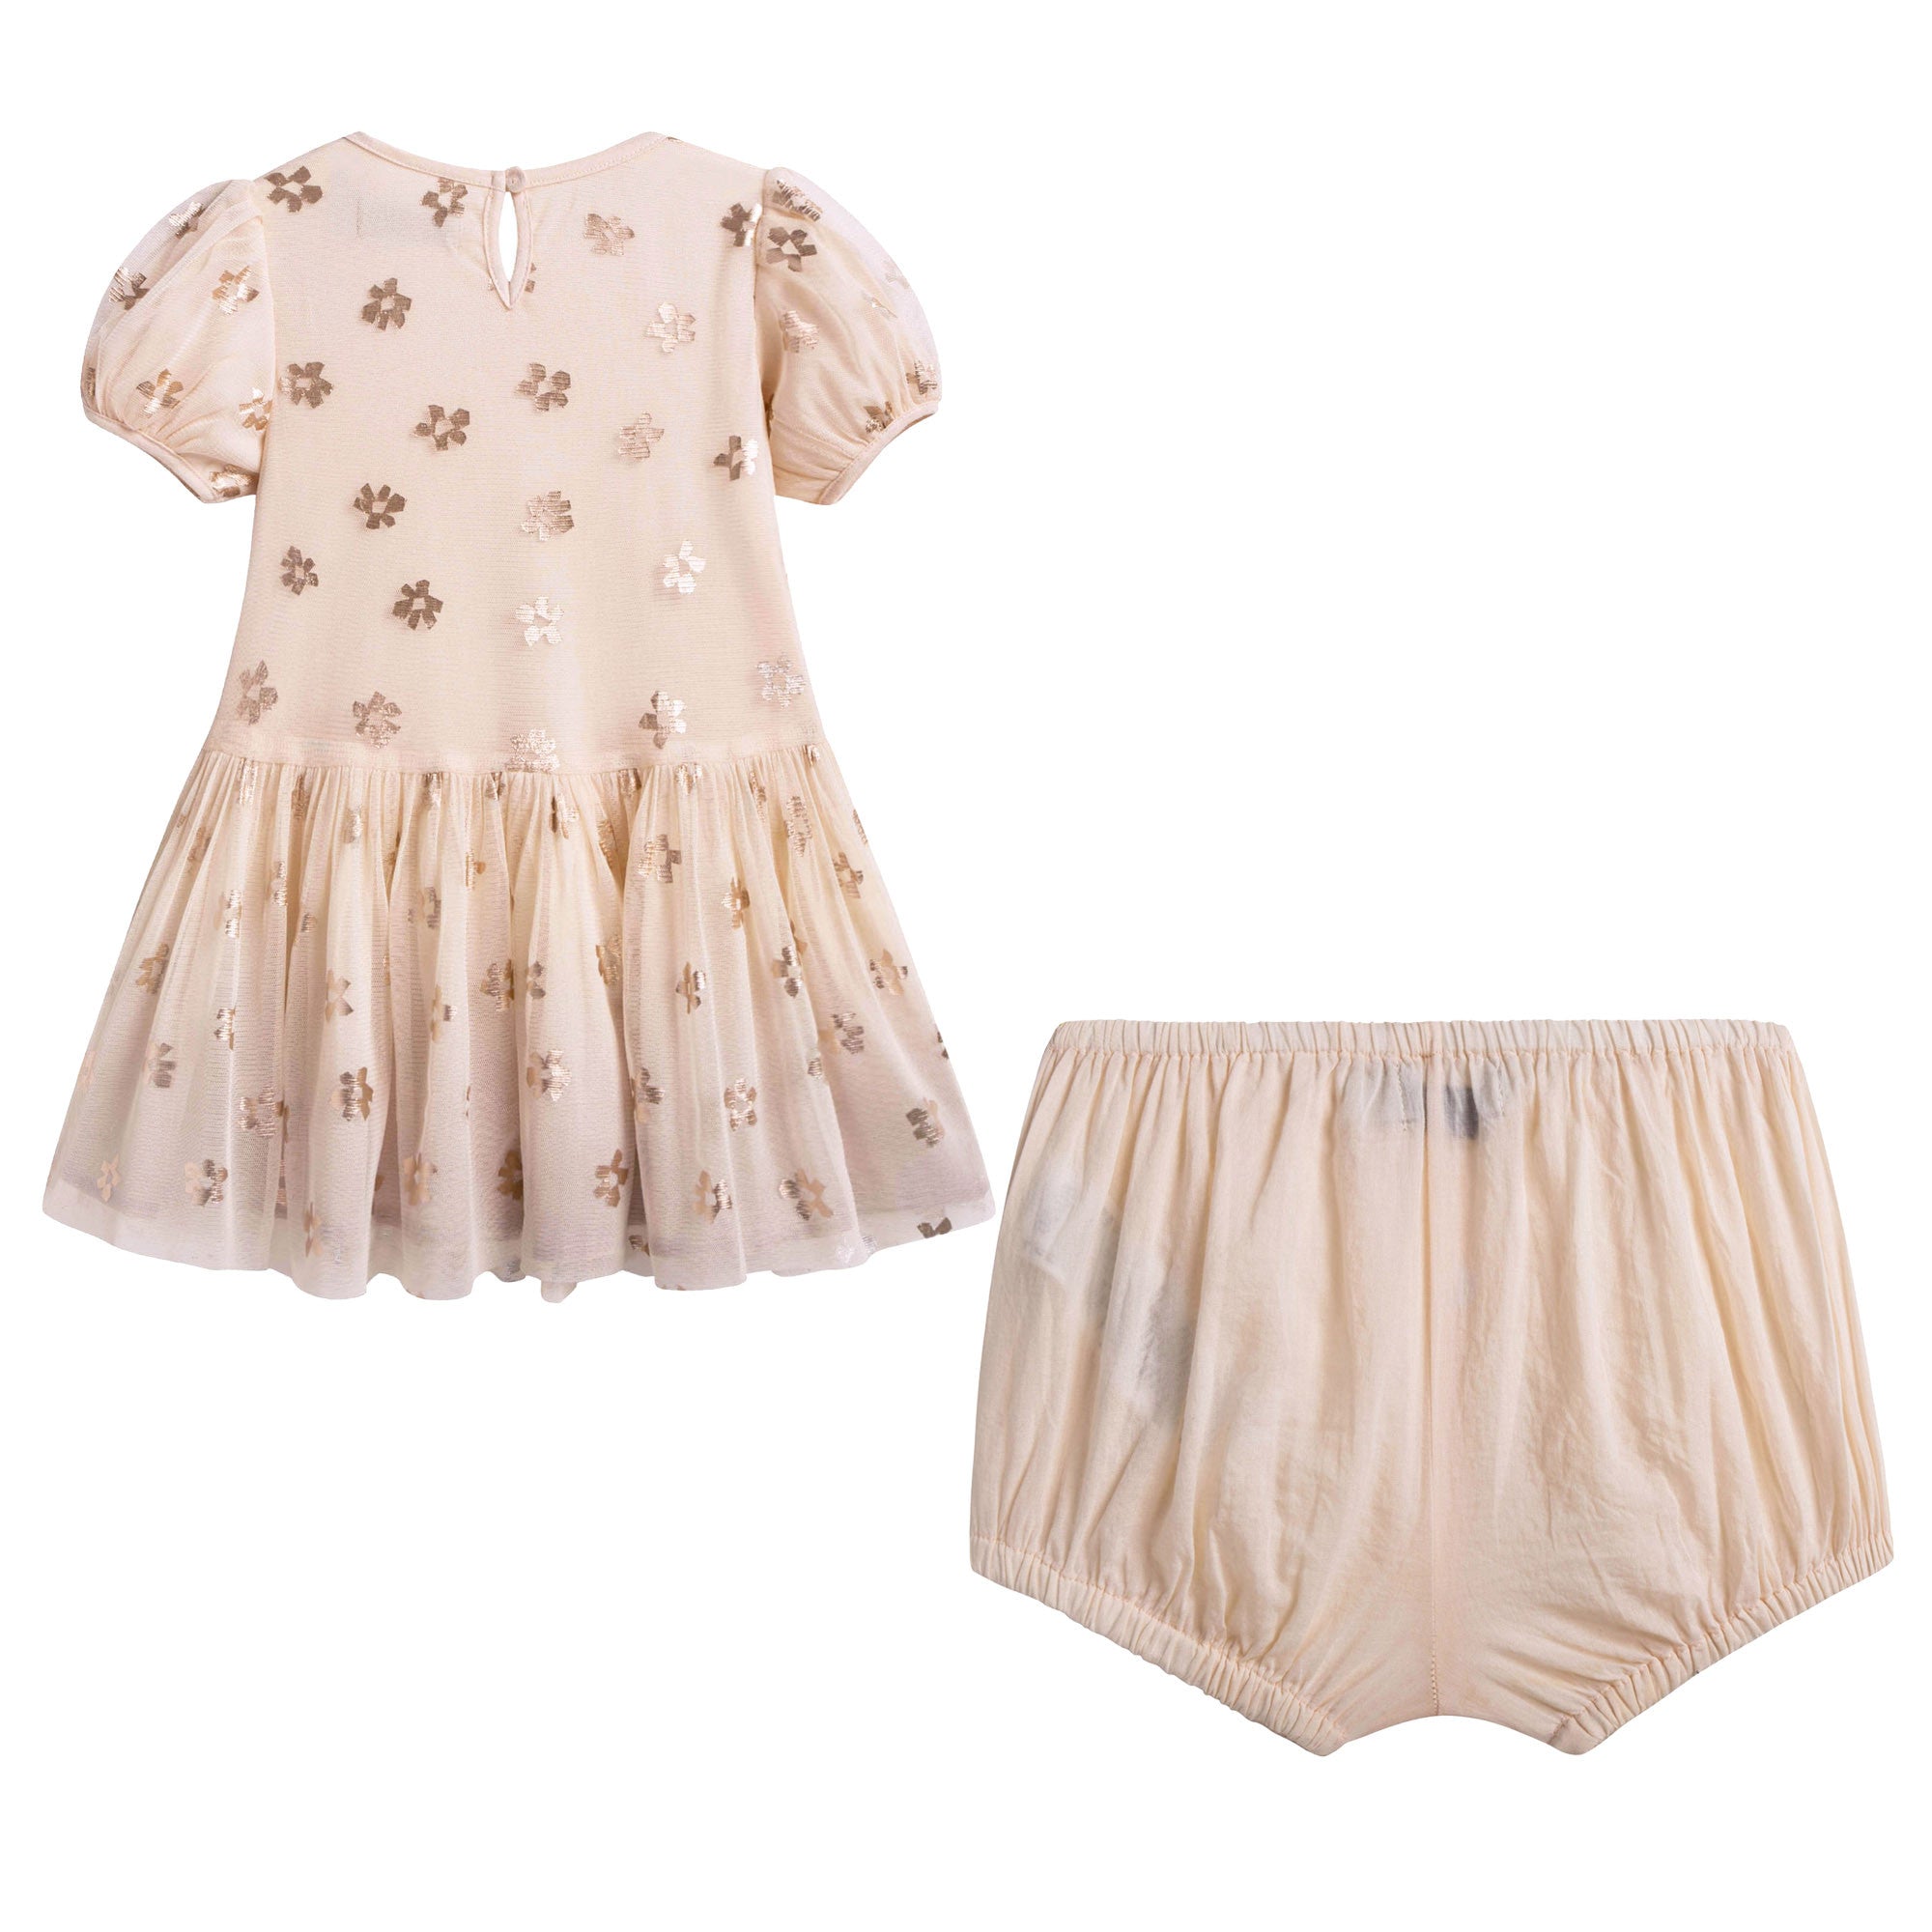 Baby Girls Pink Dress & Shorts